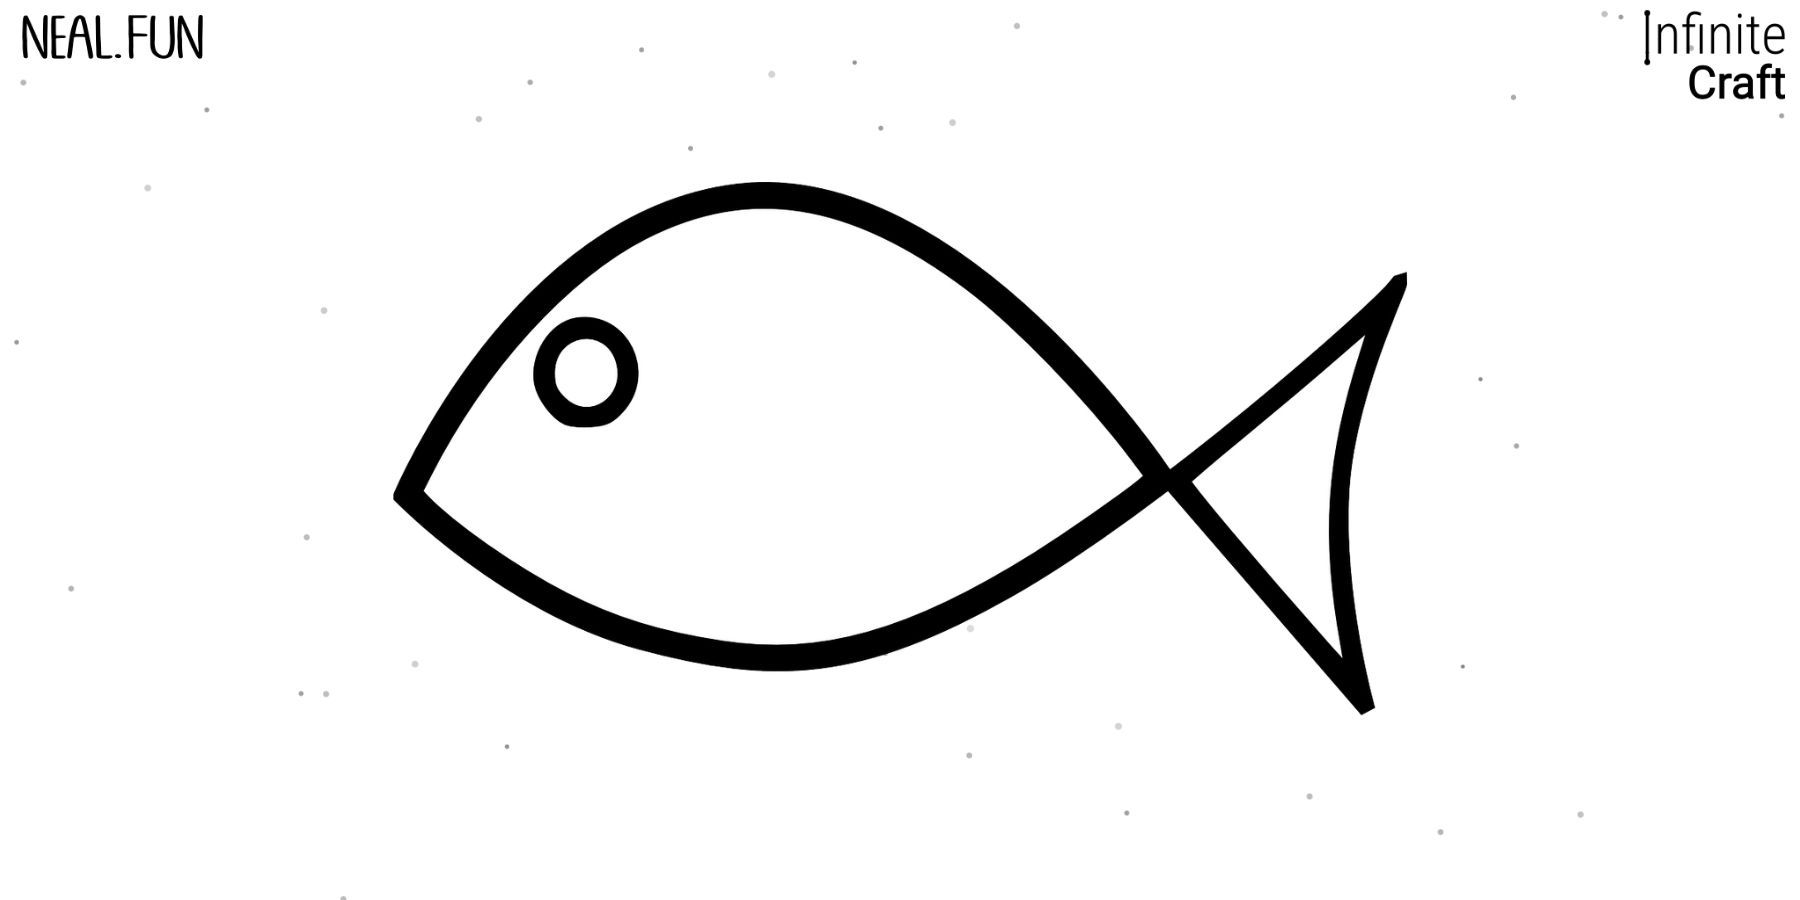 Вы сейчас просматриваете Infinite Craft: как сделать рыбу